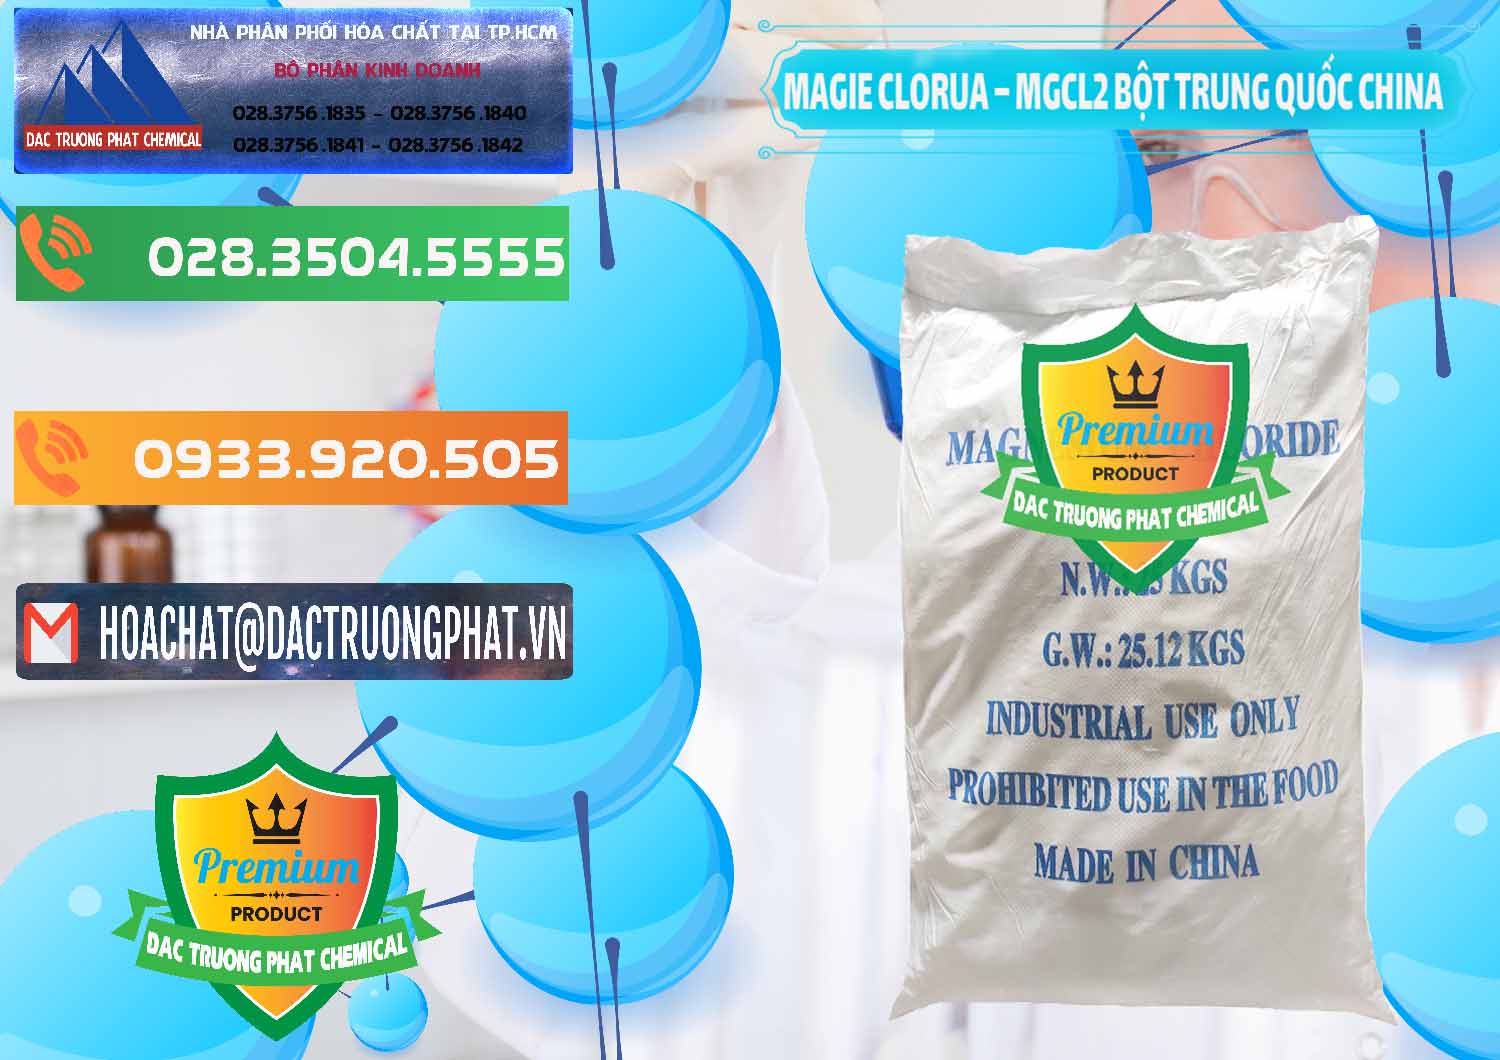 Cty chuyên phân phối ( bán ) Magie Clorua – MGCL2 96% Dạng Bột Bao Chữ Xanh Trung Quốc China - 0207 - Phân phối và kinh doanh hóa chất tại TP.HCM - hoachatxulynuoc.com.vn